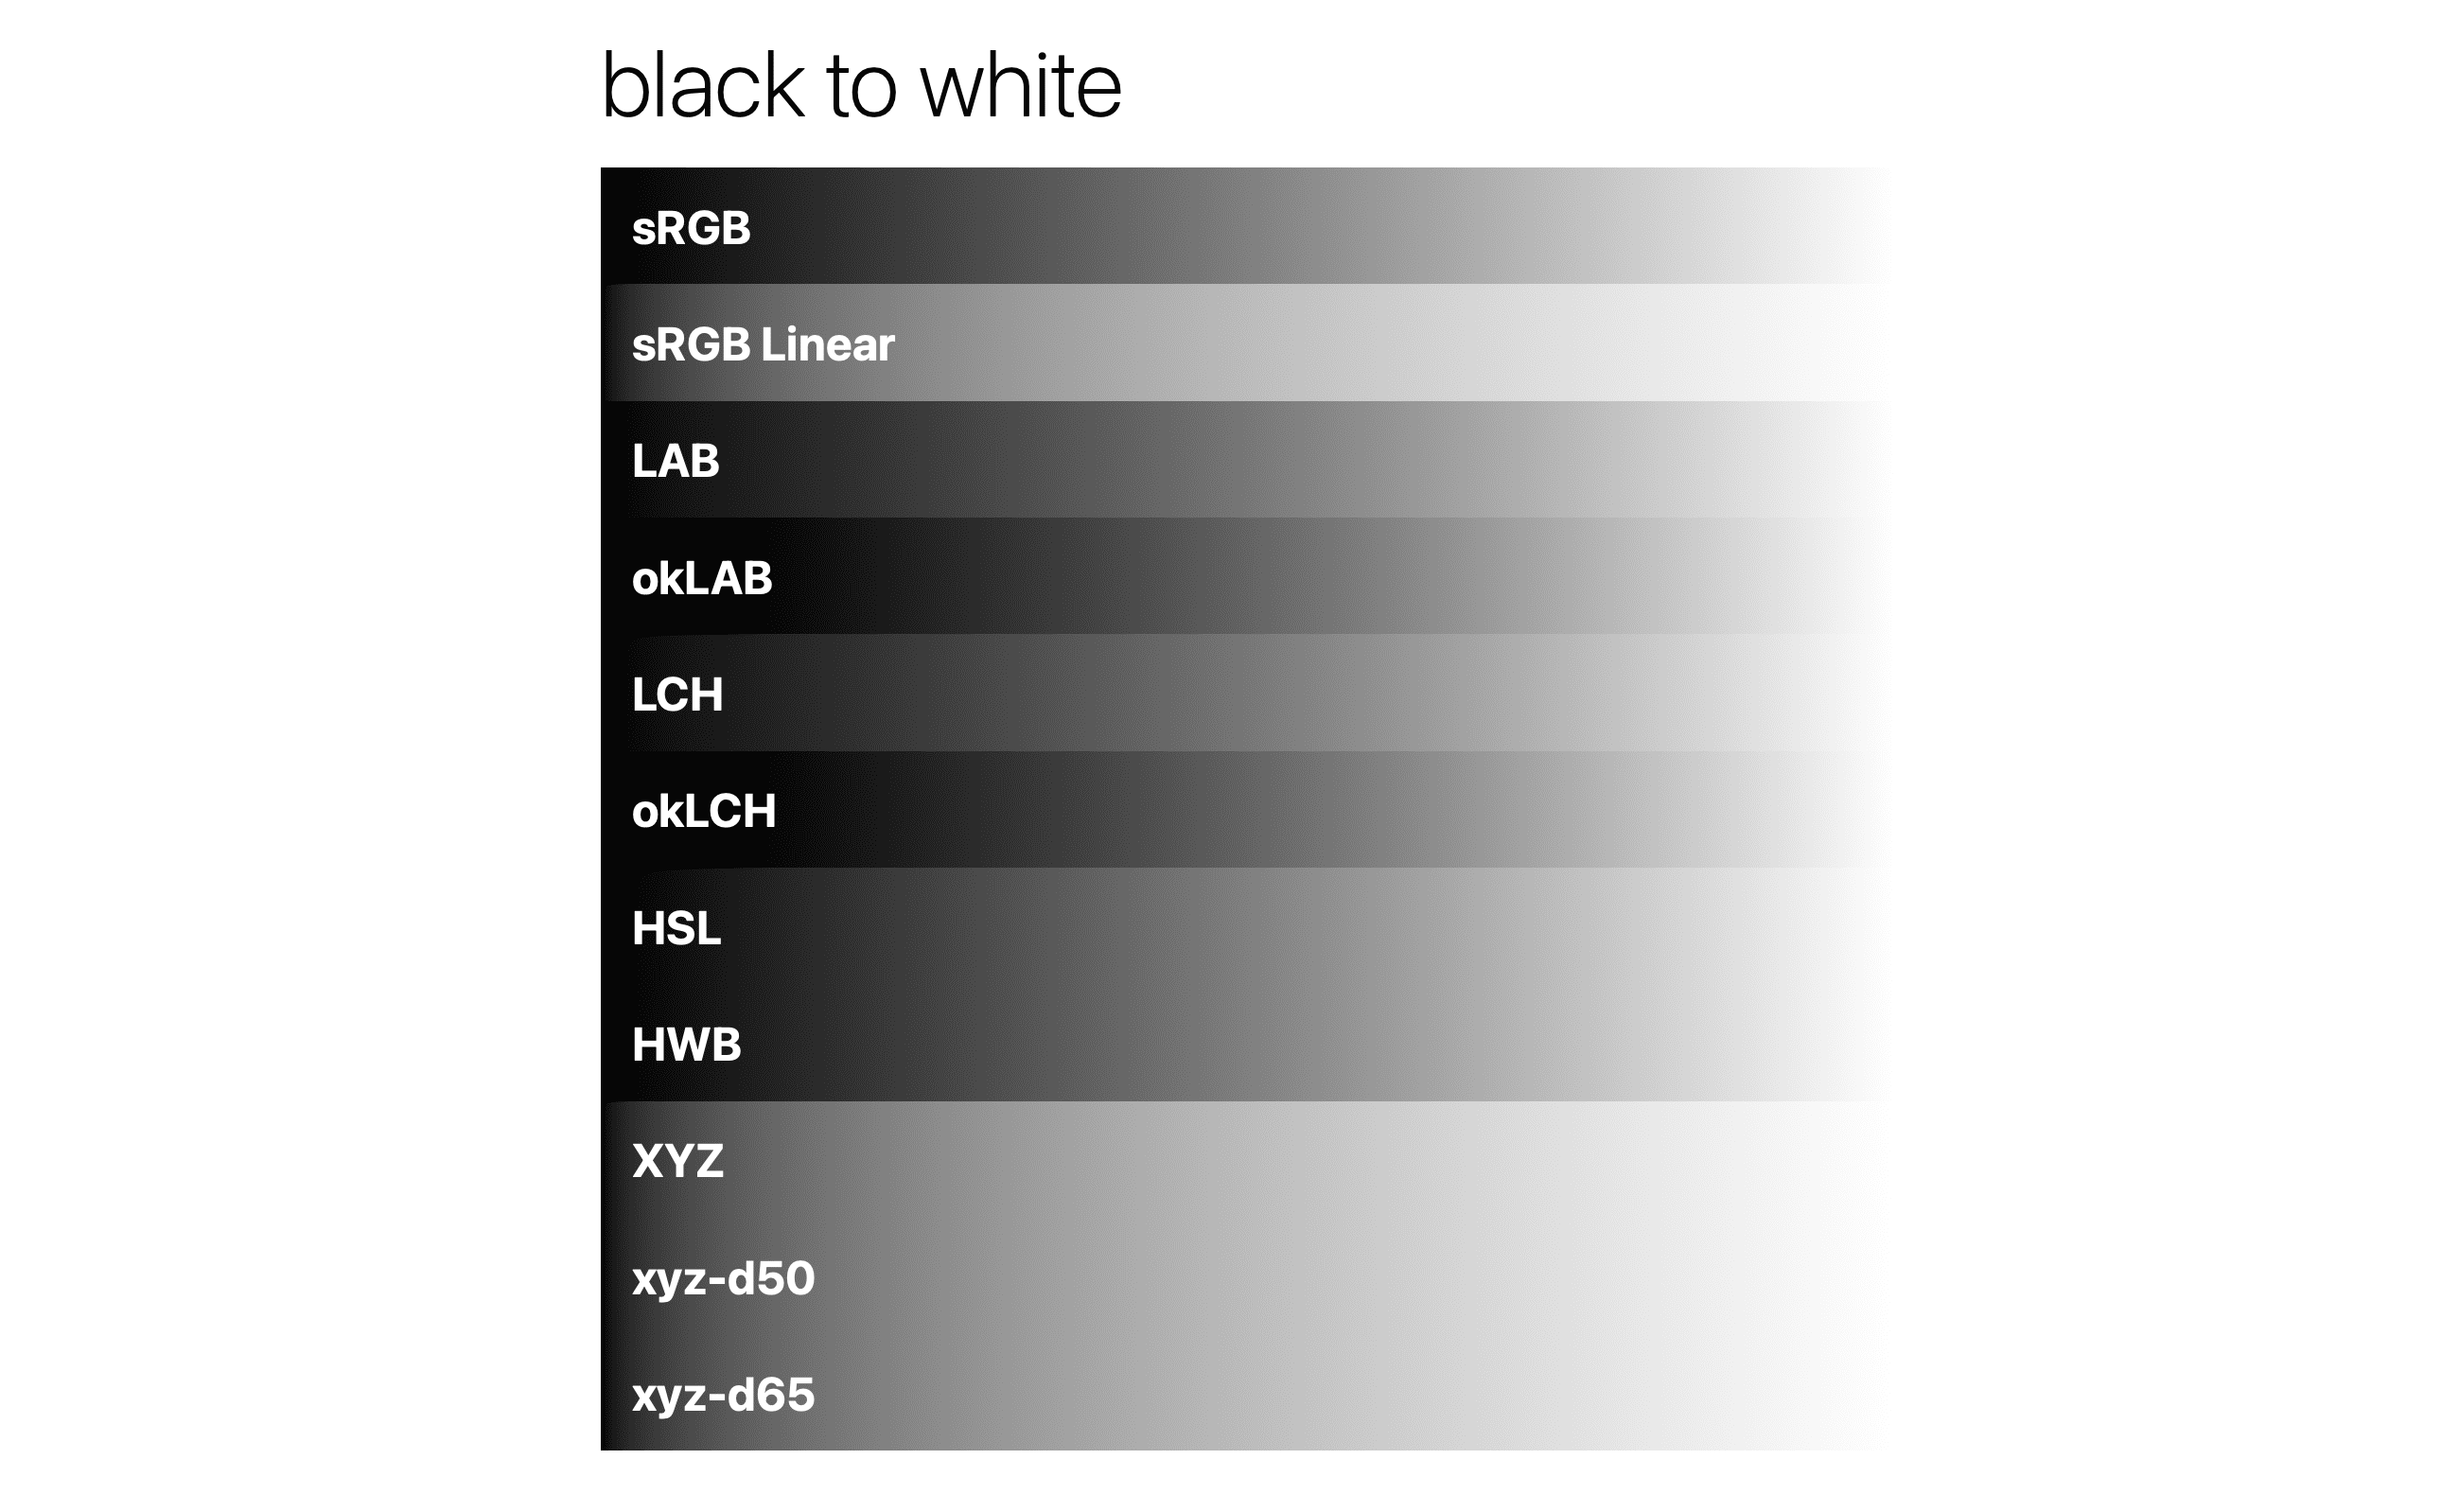 شیب سیاه به سفید در فضاهای رنگی مختلف.